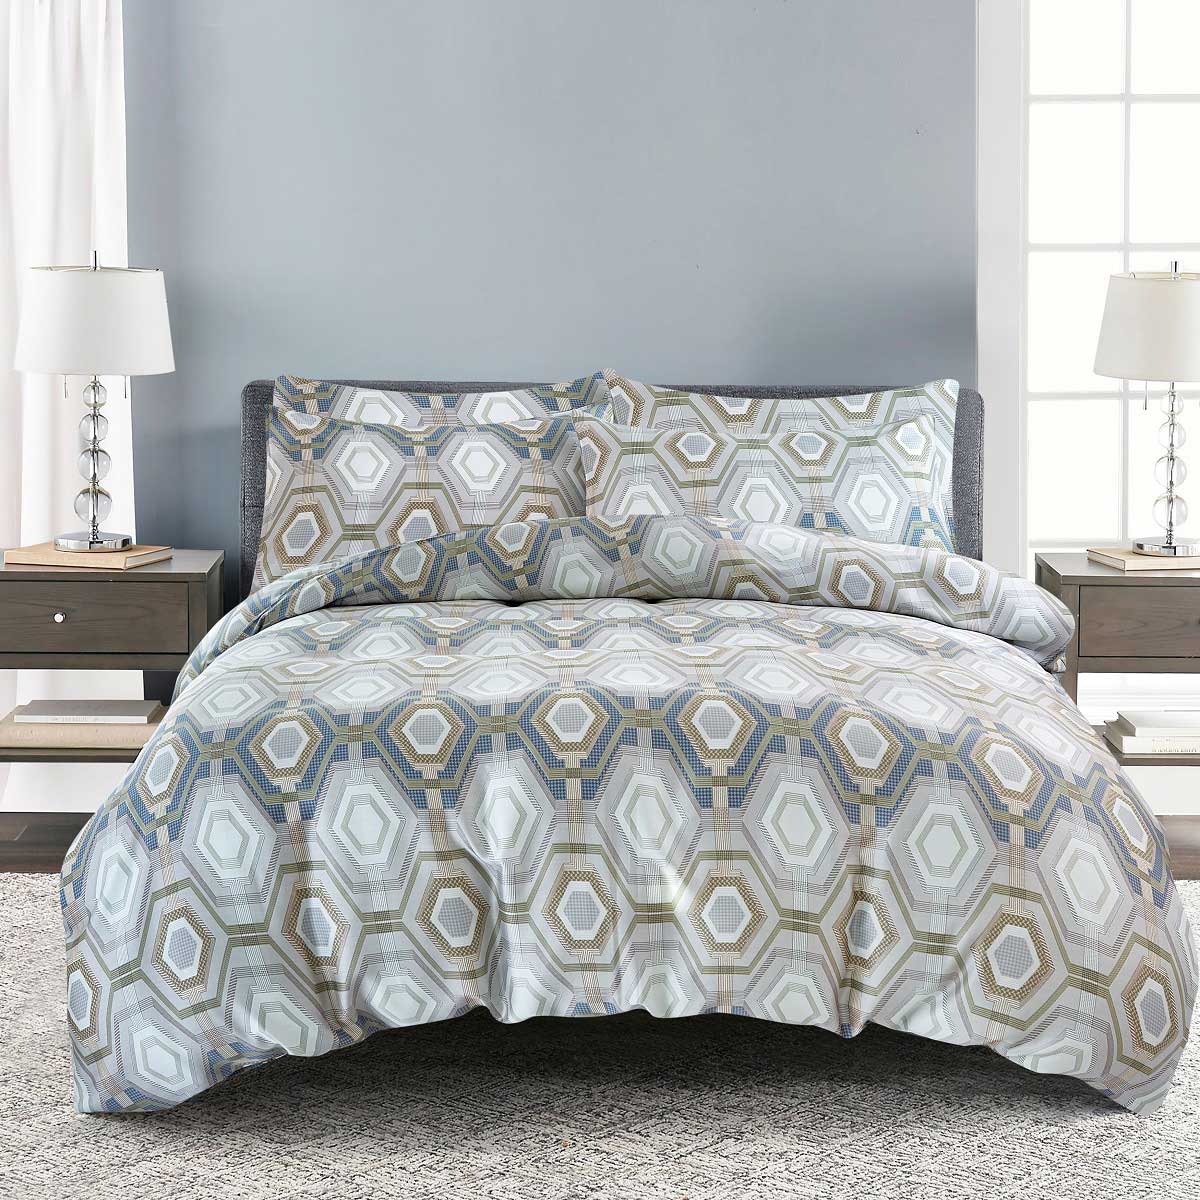 Комплект постельного белья 1,5-спальный Pappel grey geometric